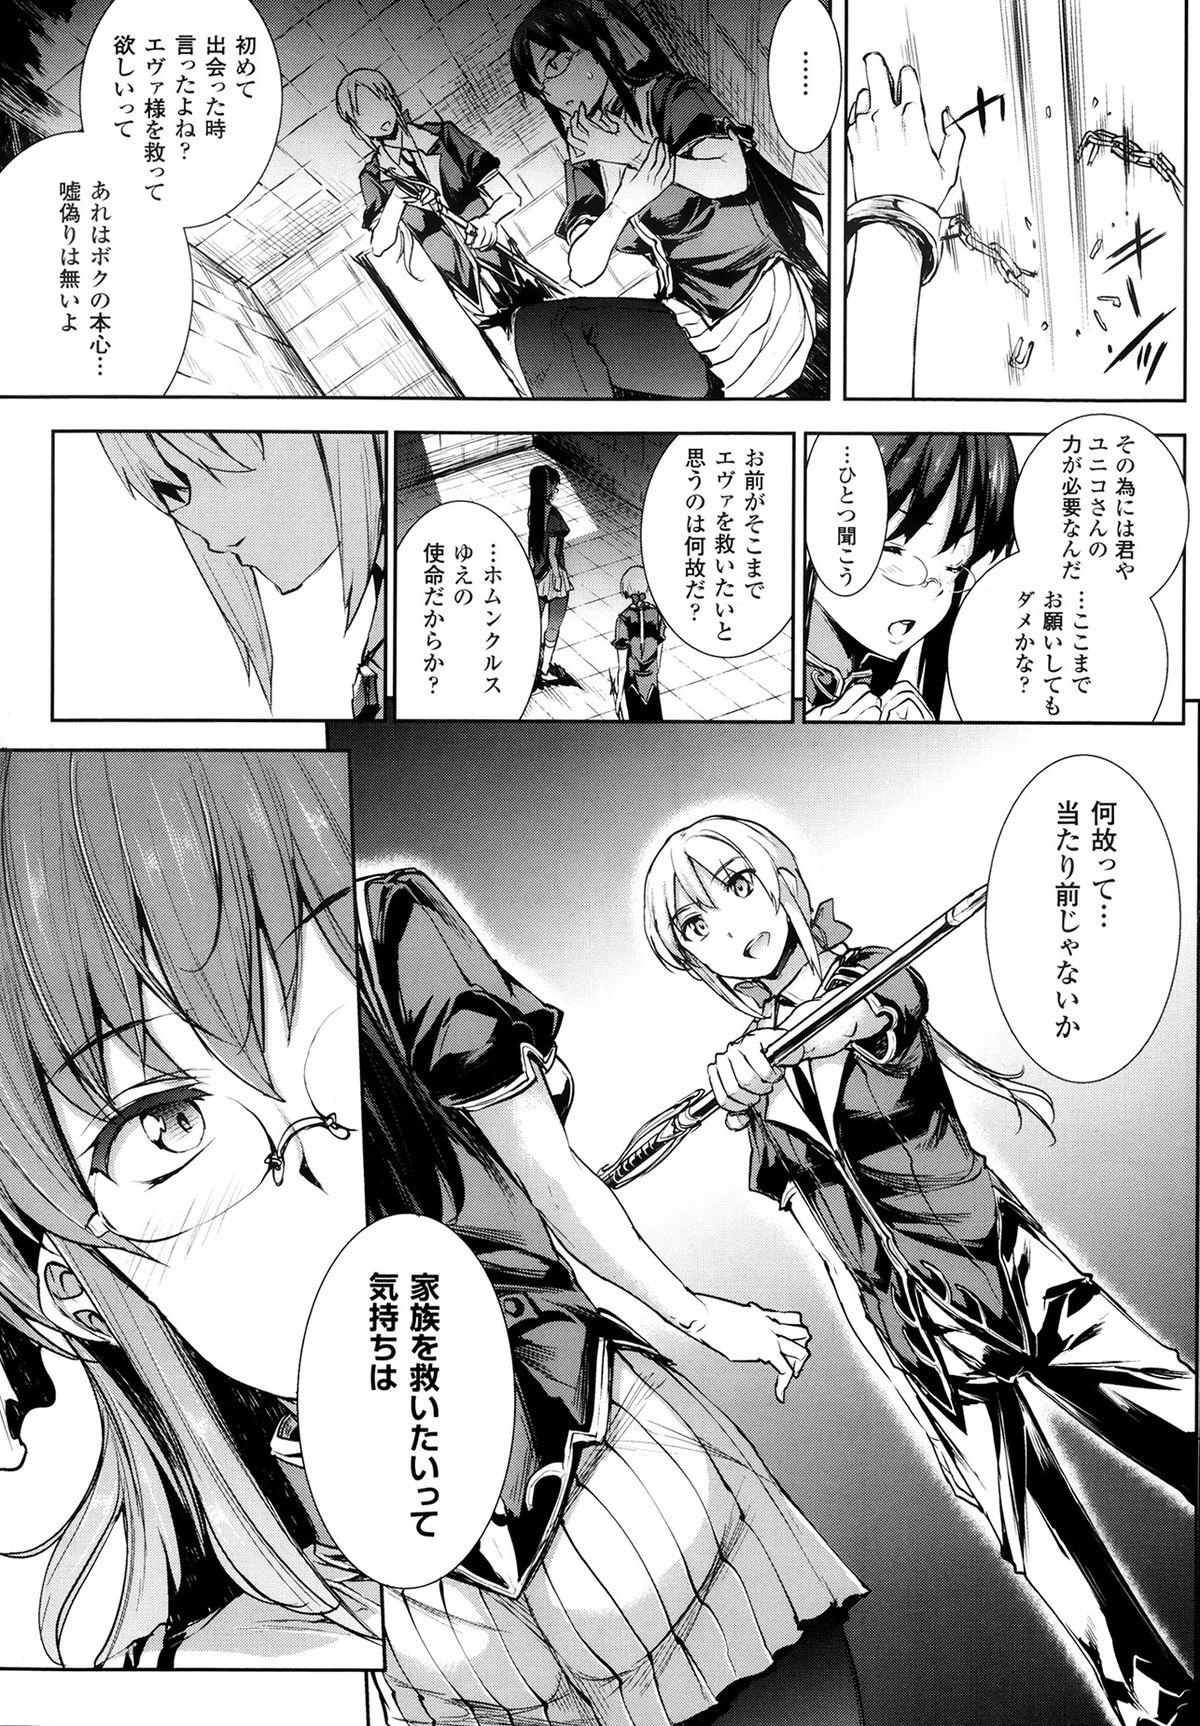 [Erect Sawaru] Shinkyoku no Grimoire -PANDRA saga 2nd story- Ch. 7-12 32